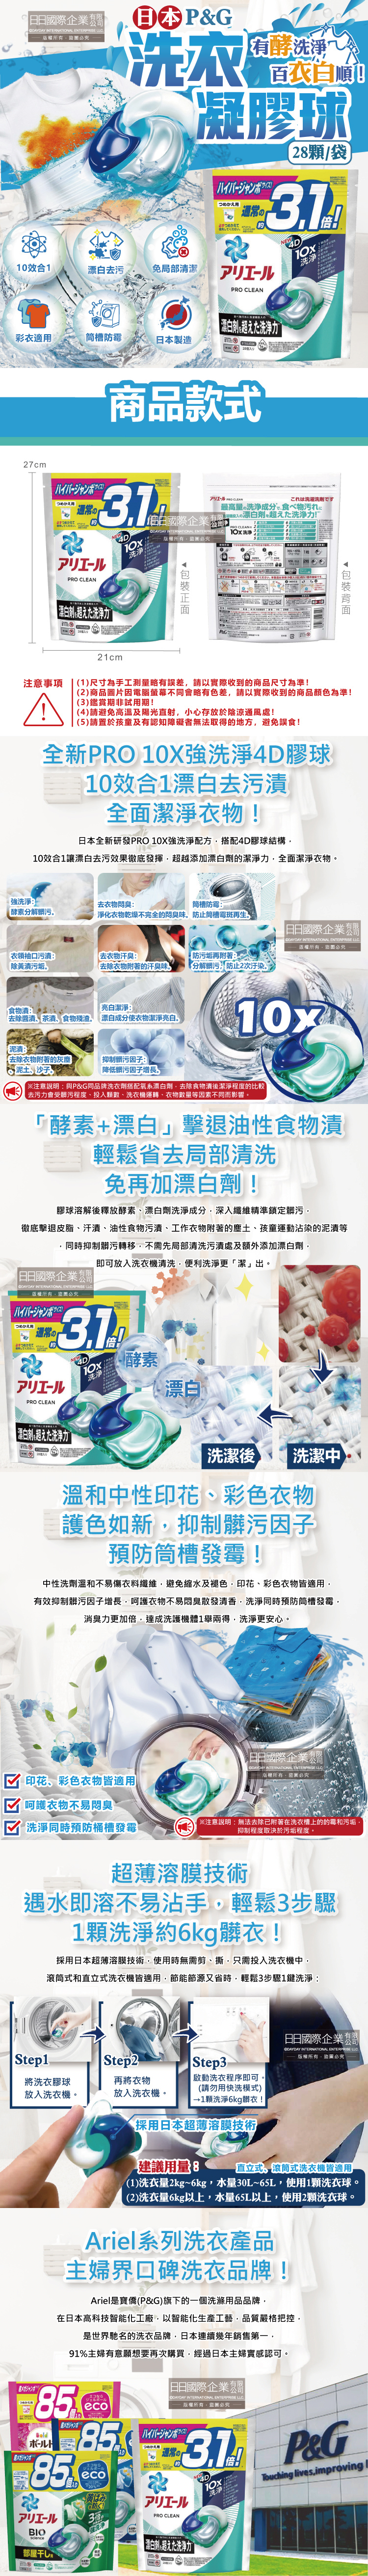 (清潔-衣物)日本P&G-Ariel-PRO-10X漂白去污洗衣球28顆袋裝介紹圖